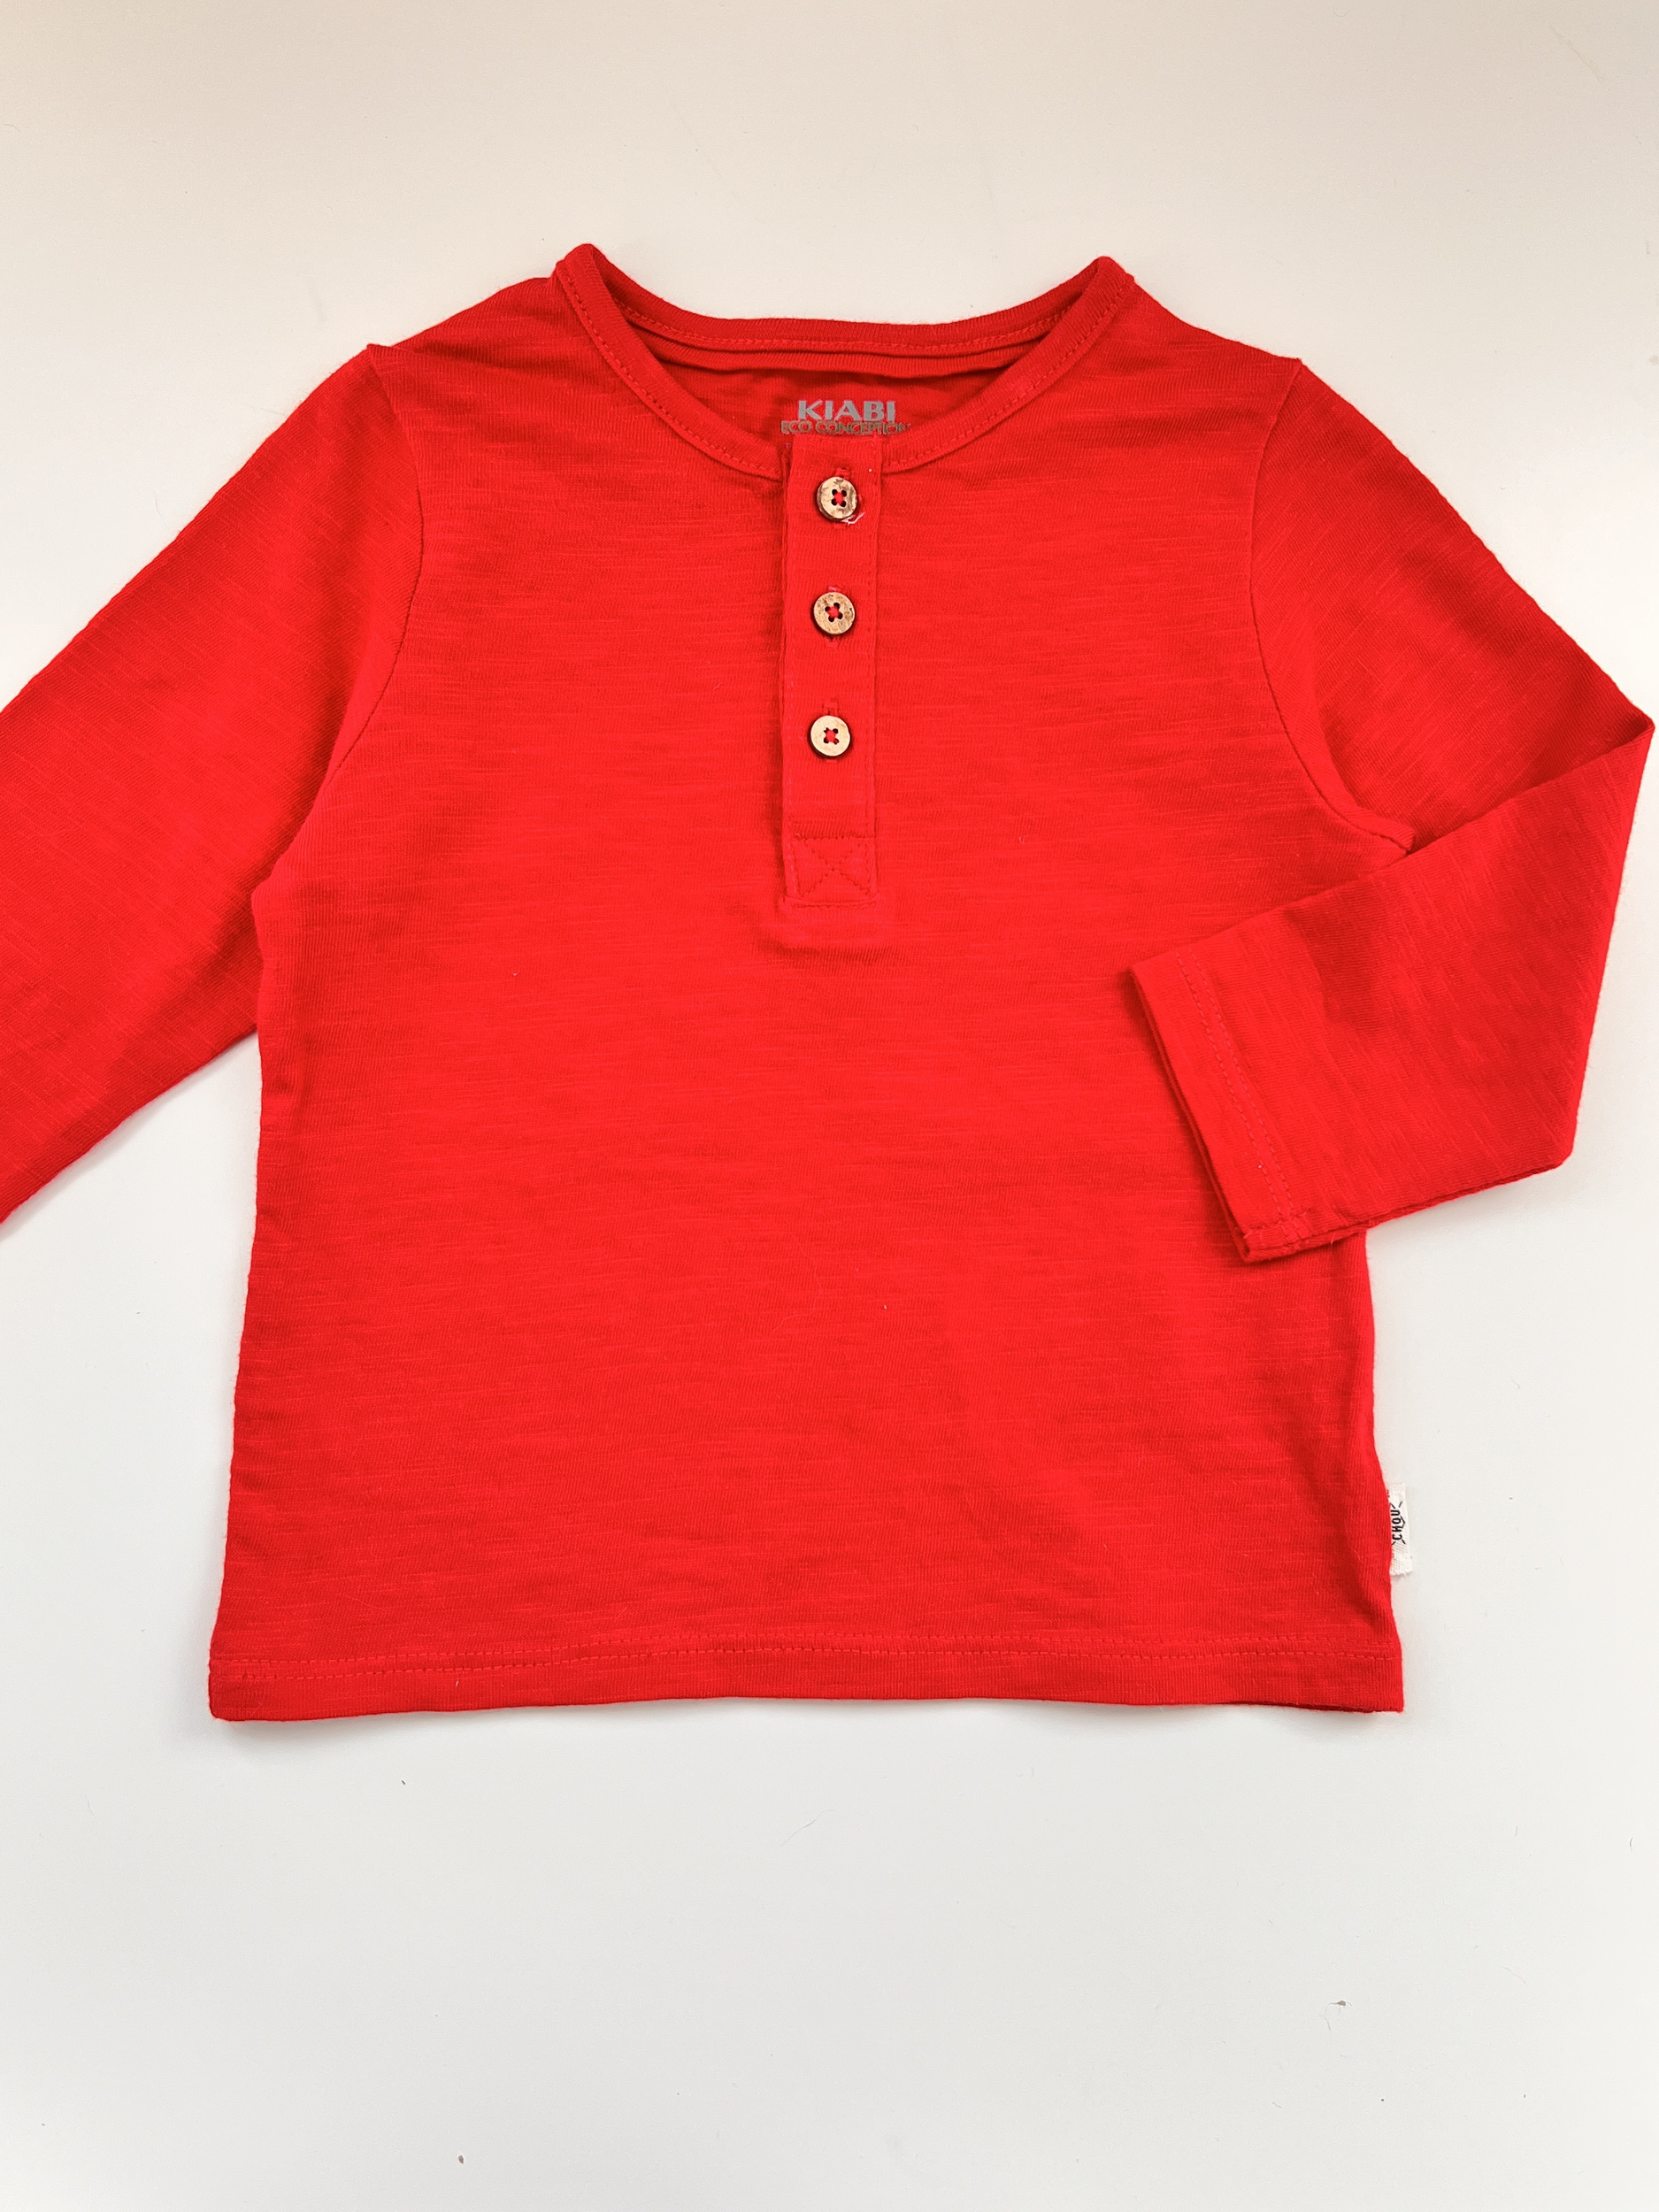 T-shirt rouge manches longue 100% coton bébé garçon - Kiabi - 9 mois